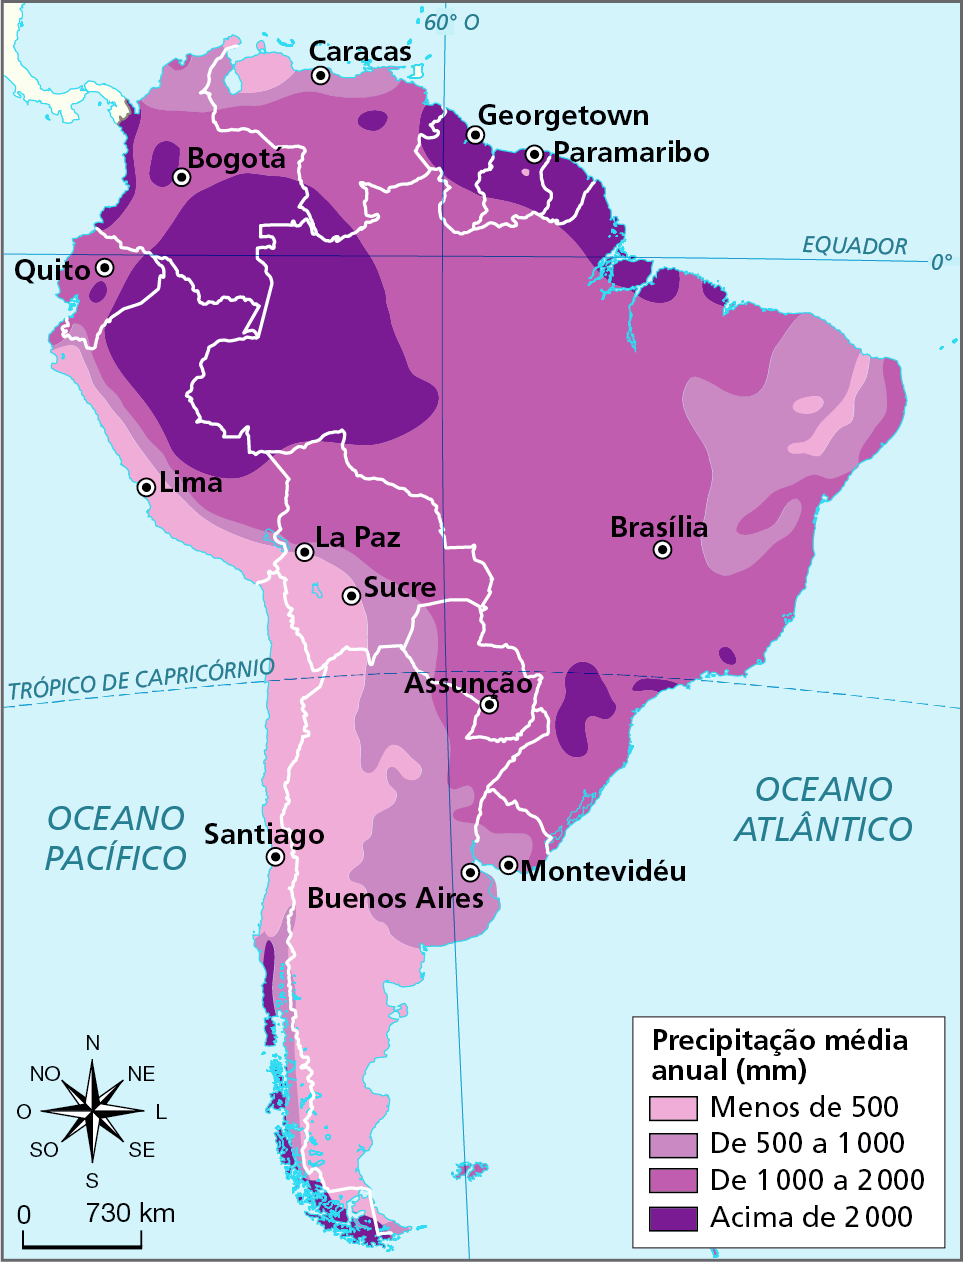 Mapa. América do Sul: precipitação média anual. Mapa da América do Sul representando a precipitação média anual (em milímetros) no território. Menos de 500 milímetros de precipitação média por ano: pequena área no norte da Venezuela; interior do nordeste brasileiro e faixa oeste do continente, desde o norte do Peru até o extremo sul do continente, englobando as cidades de Lima e Santiago.   De 500 a 1.000 milímetros de precipitação média por ano: parte do nordeste do Brasil, faixa estreita cruzando o Peru e Bolívia de norte a sul, nordeste e leste da Argentina e noroeste do Paraguai, sudoeste e sul do Uruguai e no norte da Colômbia e da Venezuela.  De 1.000 a 2.000 milímetros de precipitação média por ano: maior parte do território do Brasil, exceto em sua porção noroeste,  nordeste e parte do sul, oeste, norte e leste da Bolívia, quase em todo o Paraguai, no norte do Uruguai, nordeste da Argentina, faixa oeste no Peru e na Colômbia e grande parte do território da Venezuela. Acima de 2.000 milímetros de precipitação média por ano: noroeste do Brasil, leste e norte do Peru, sul e porção central na Colômbia, e maior parte do território de Guiana, Suriname e Guiana Francesa.  À esquerda, rosa dos ventos e escala de 0 a 730 quilômetros.